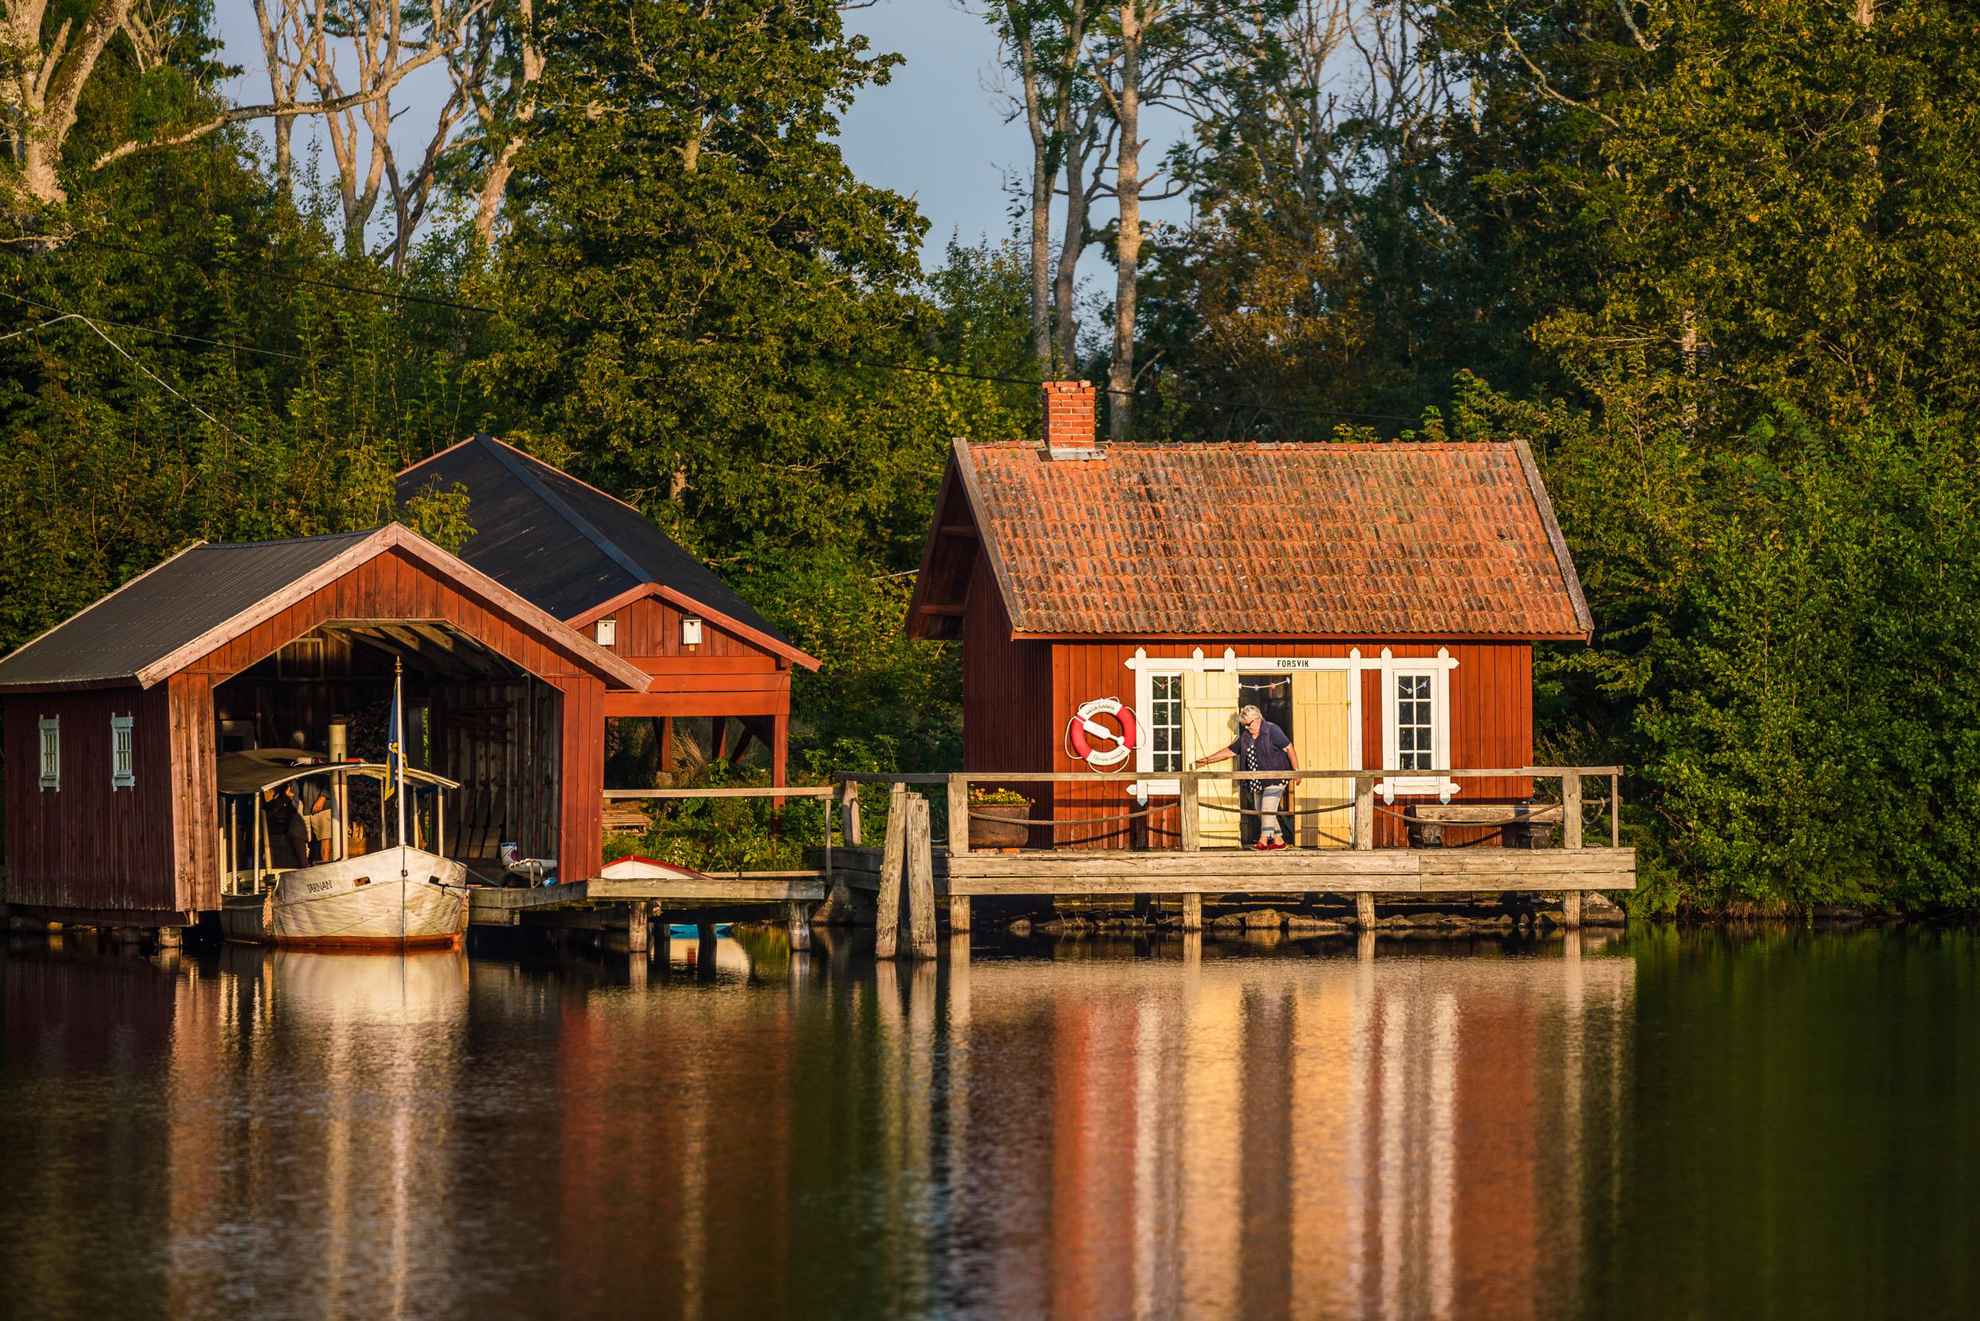 Een vrouw verlaat een rood houten huis dat aan het water ligt. Naast het huis staat een botenhuis.